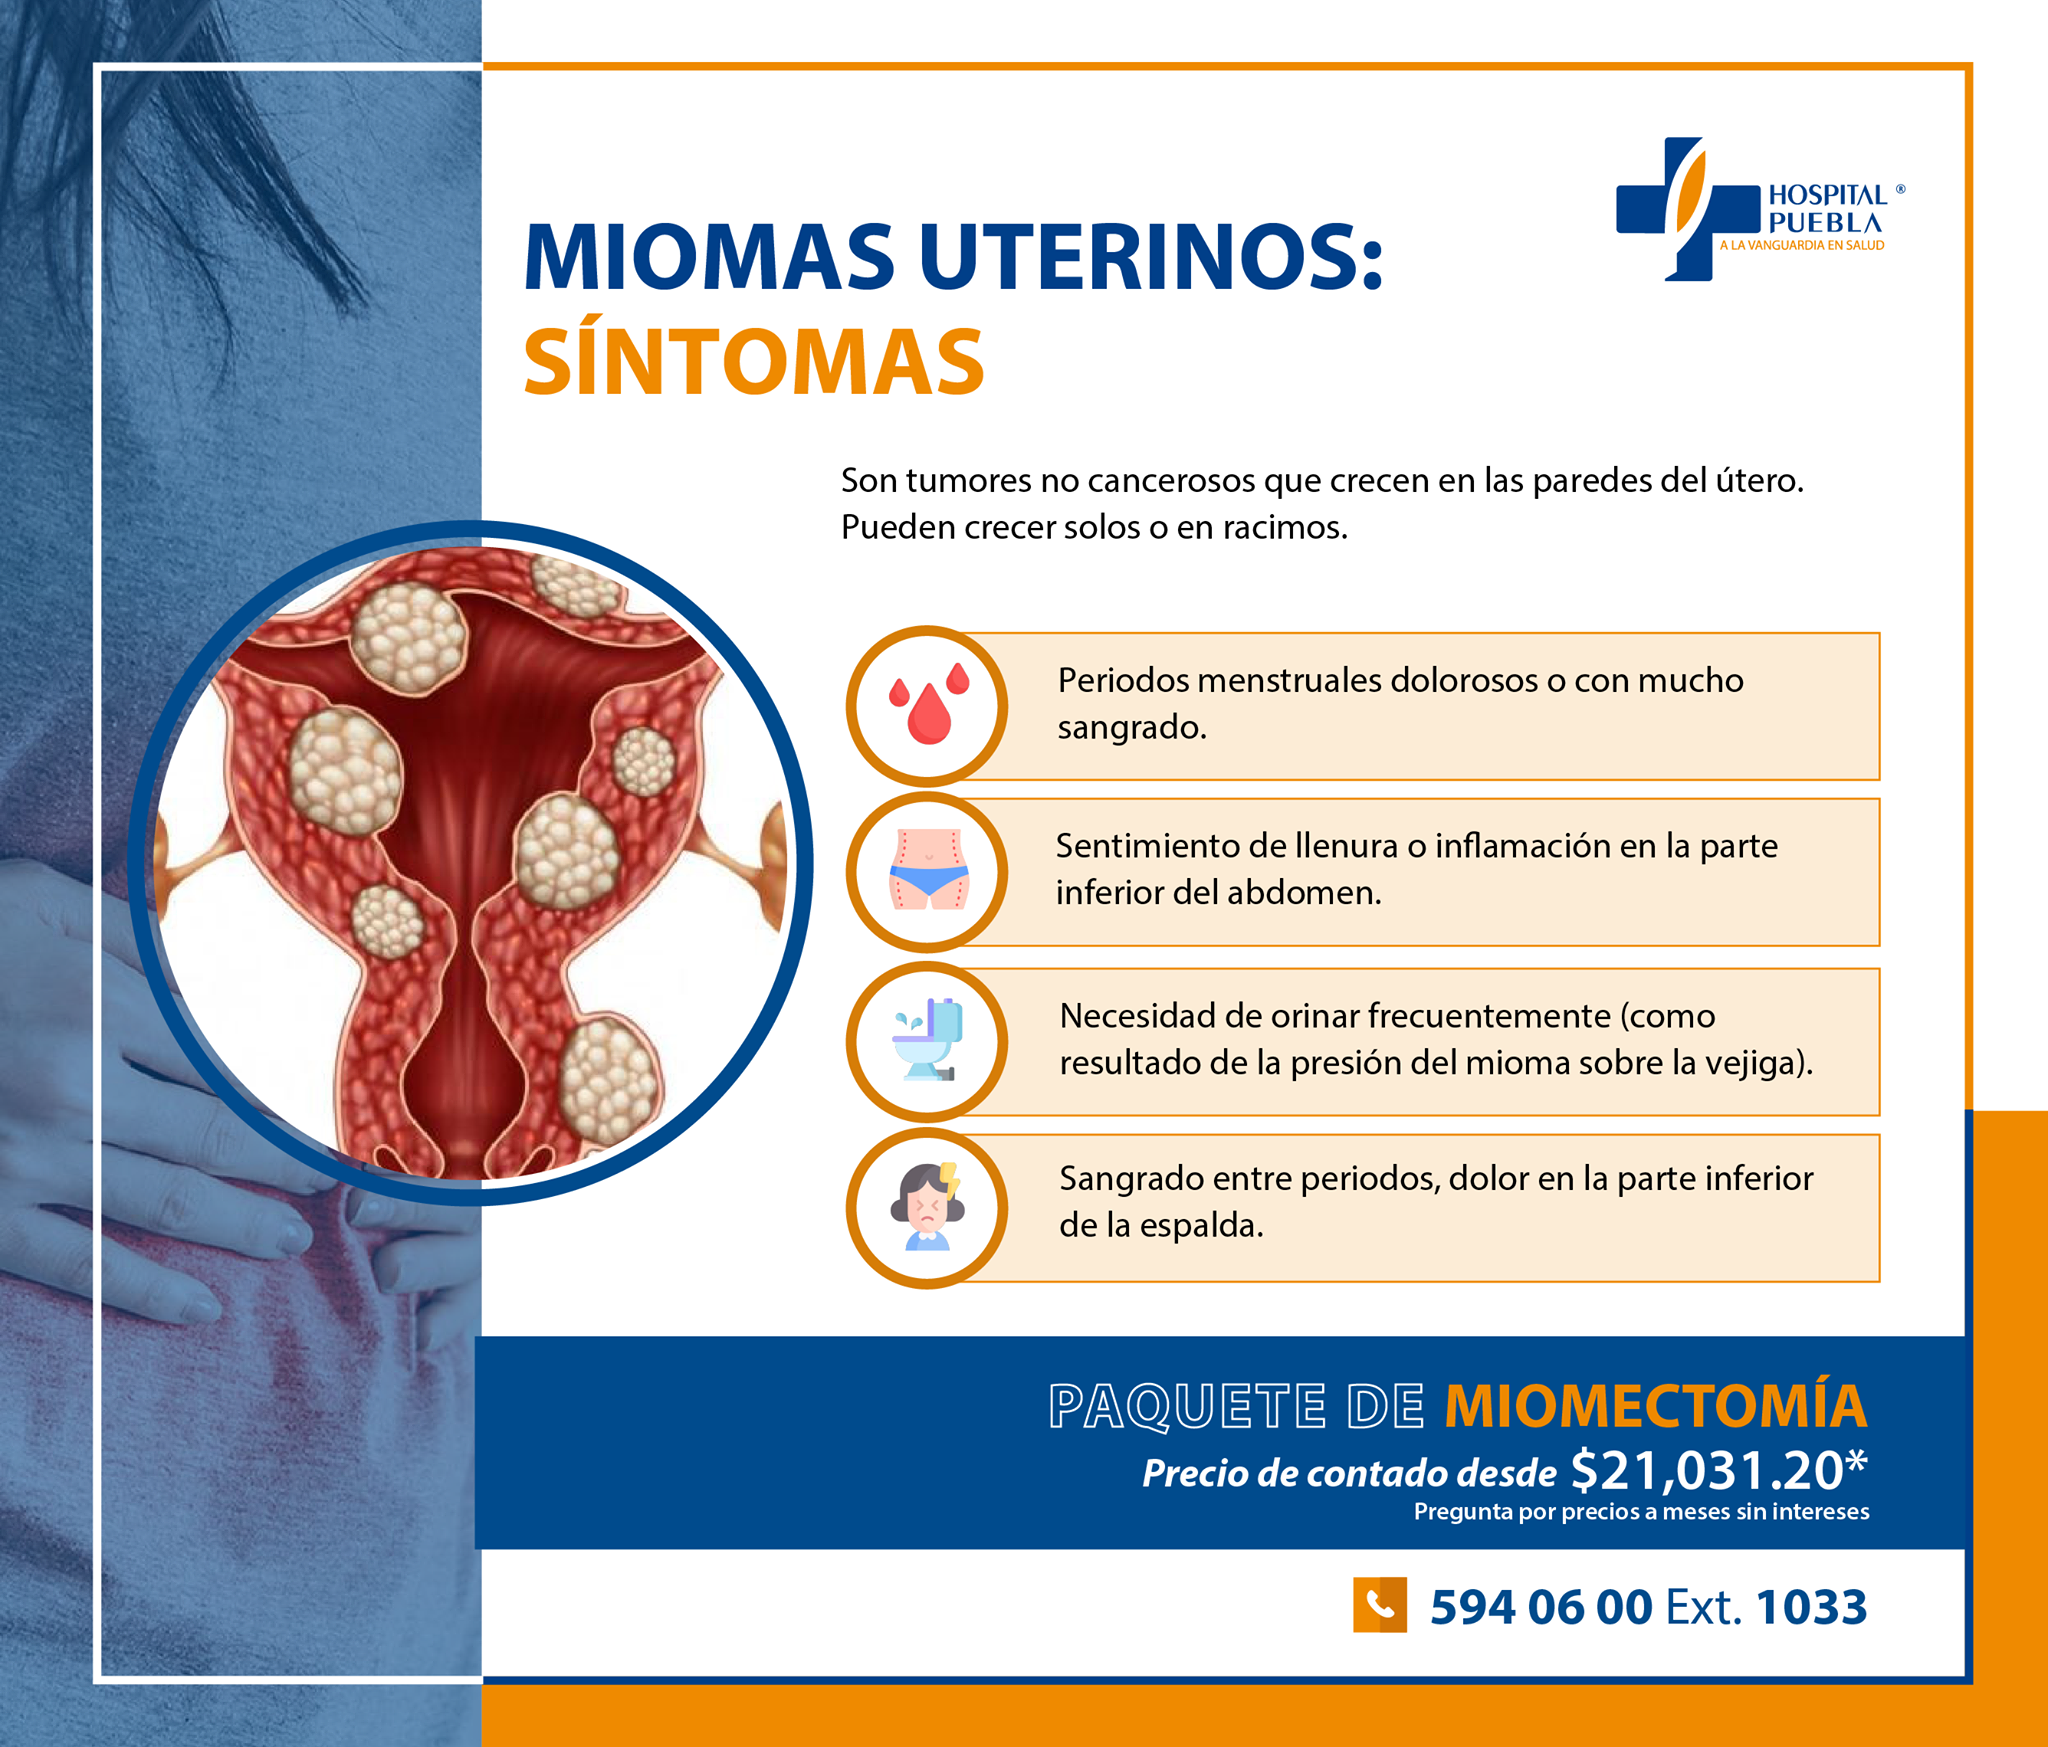 Paquete de Miomectomía